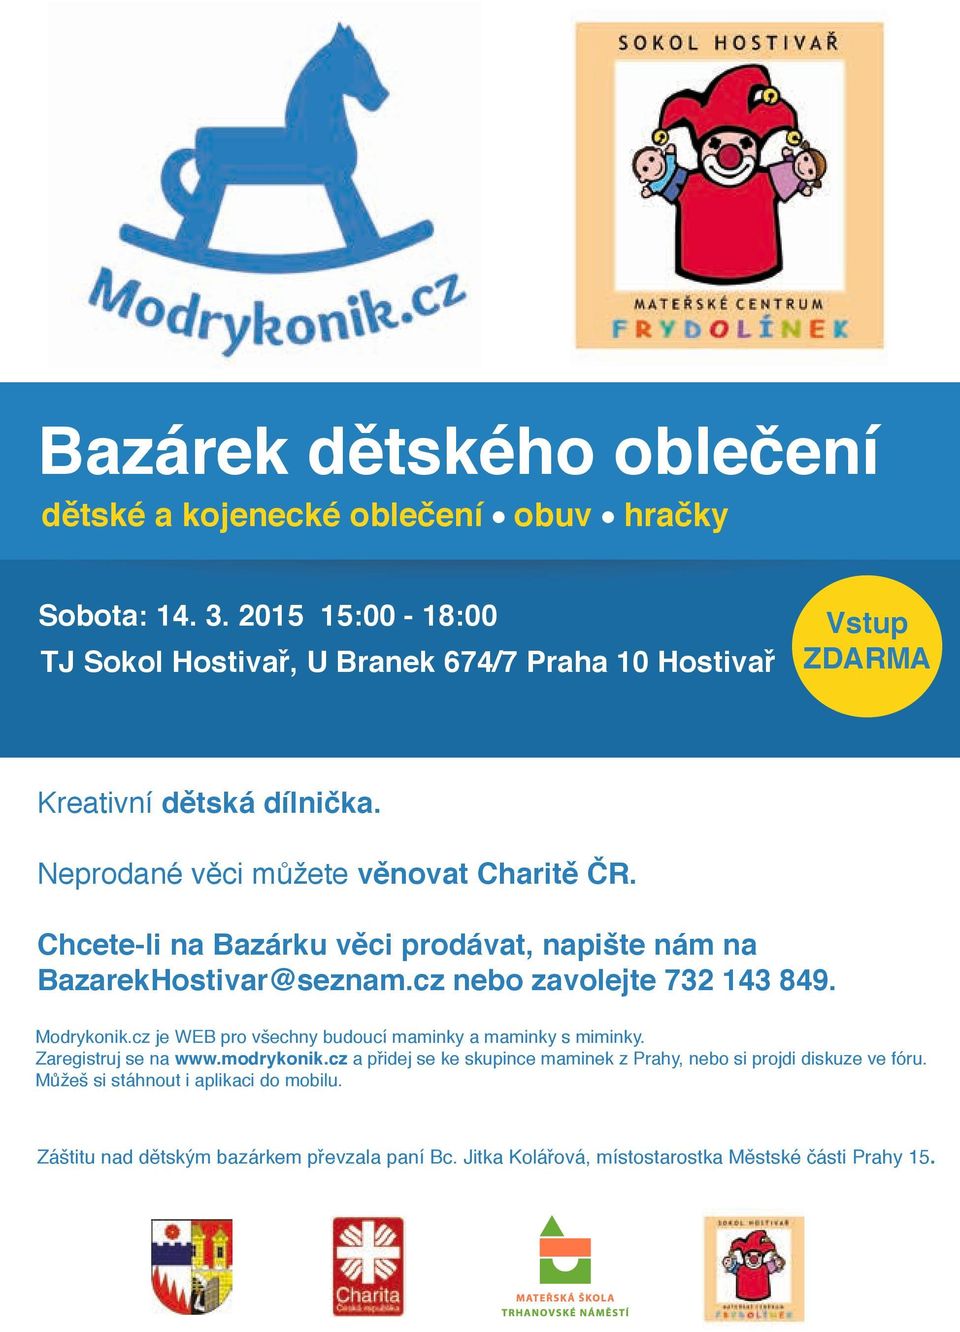 Chcete-li na Bazárku věci prodávat, napište nám na BazarekHostivar@seznam.cz nebo zavolejte 732 143 849. Modrykonik.